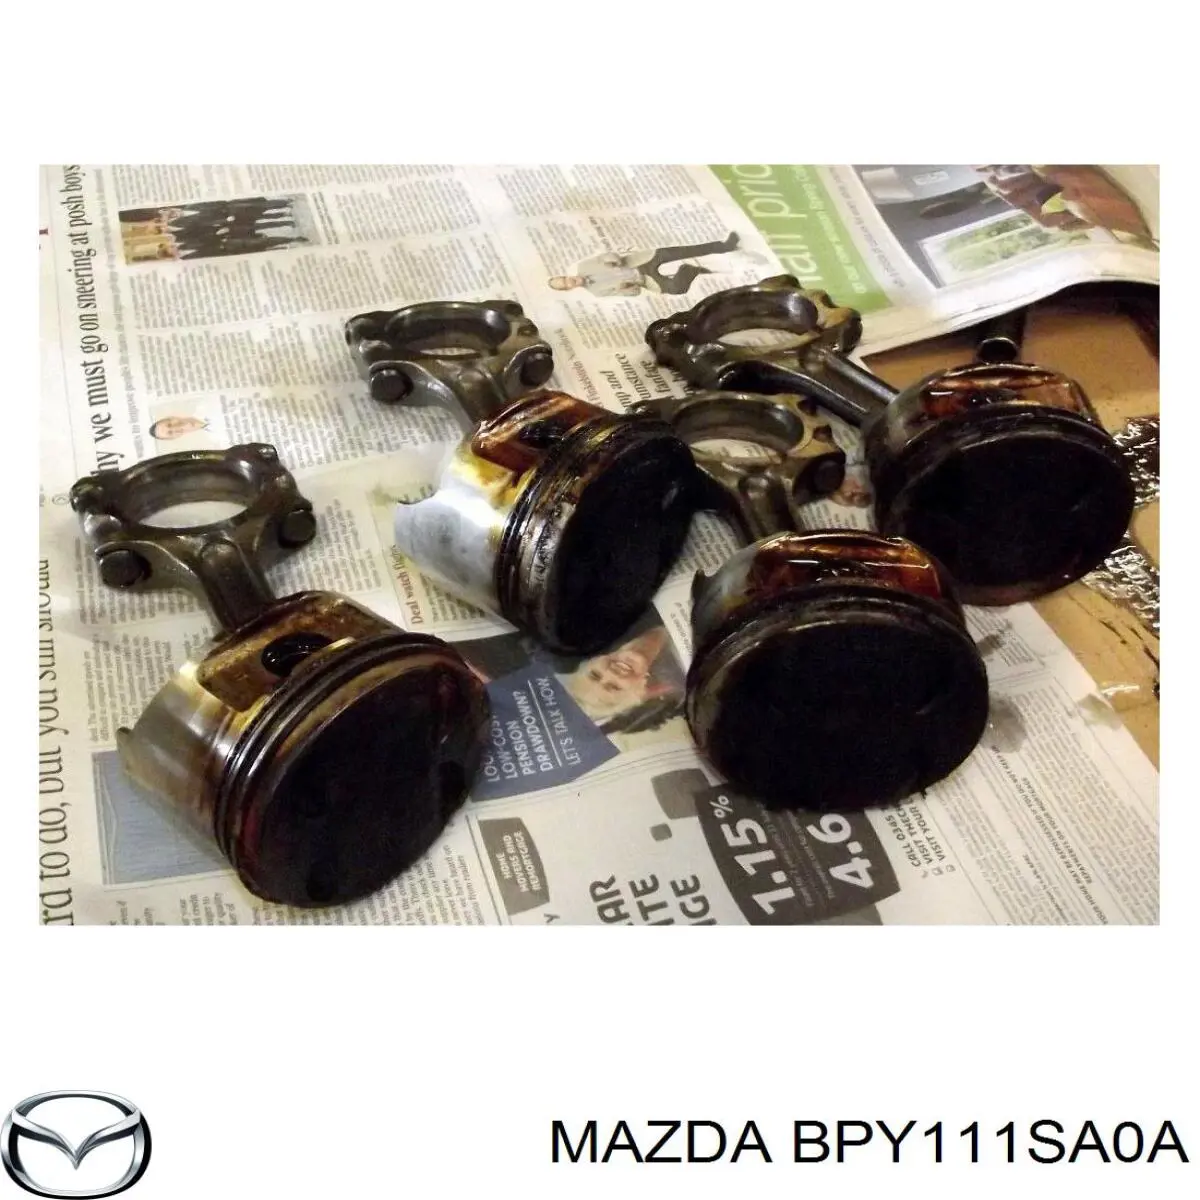 BPY111SA0 Mazda pistón con bulón sin anillos, std